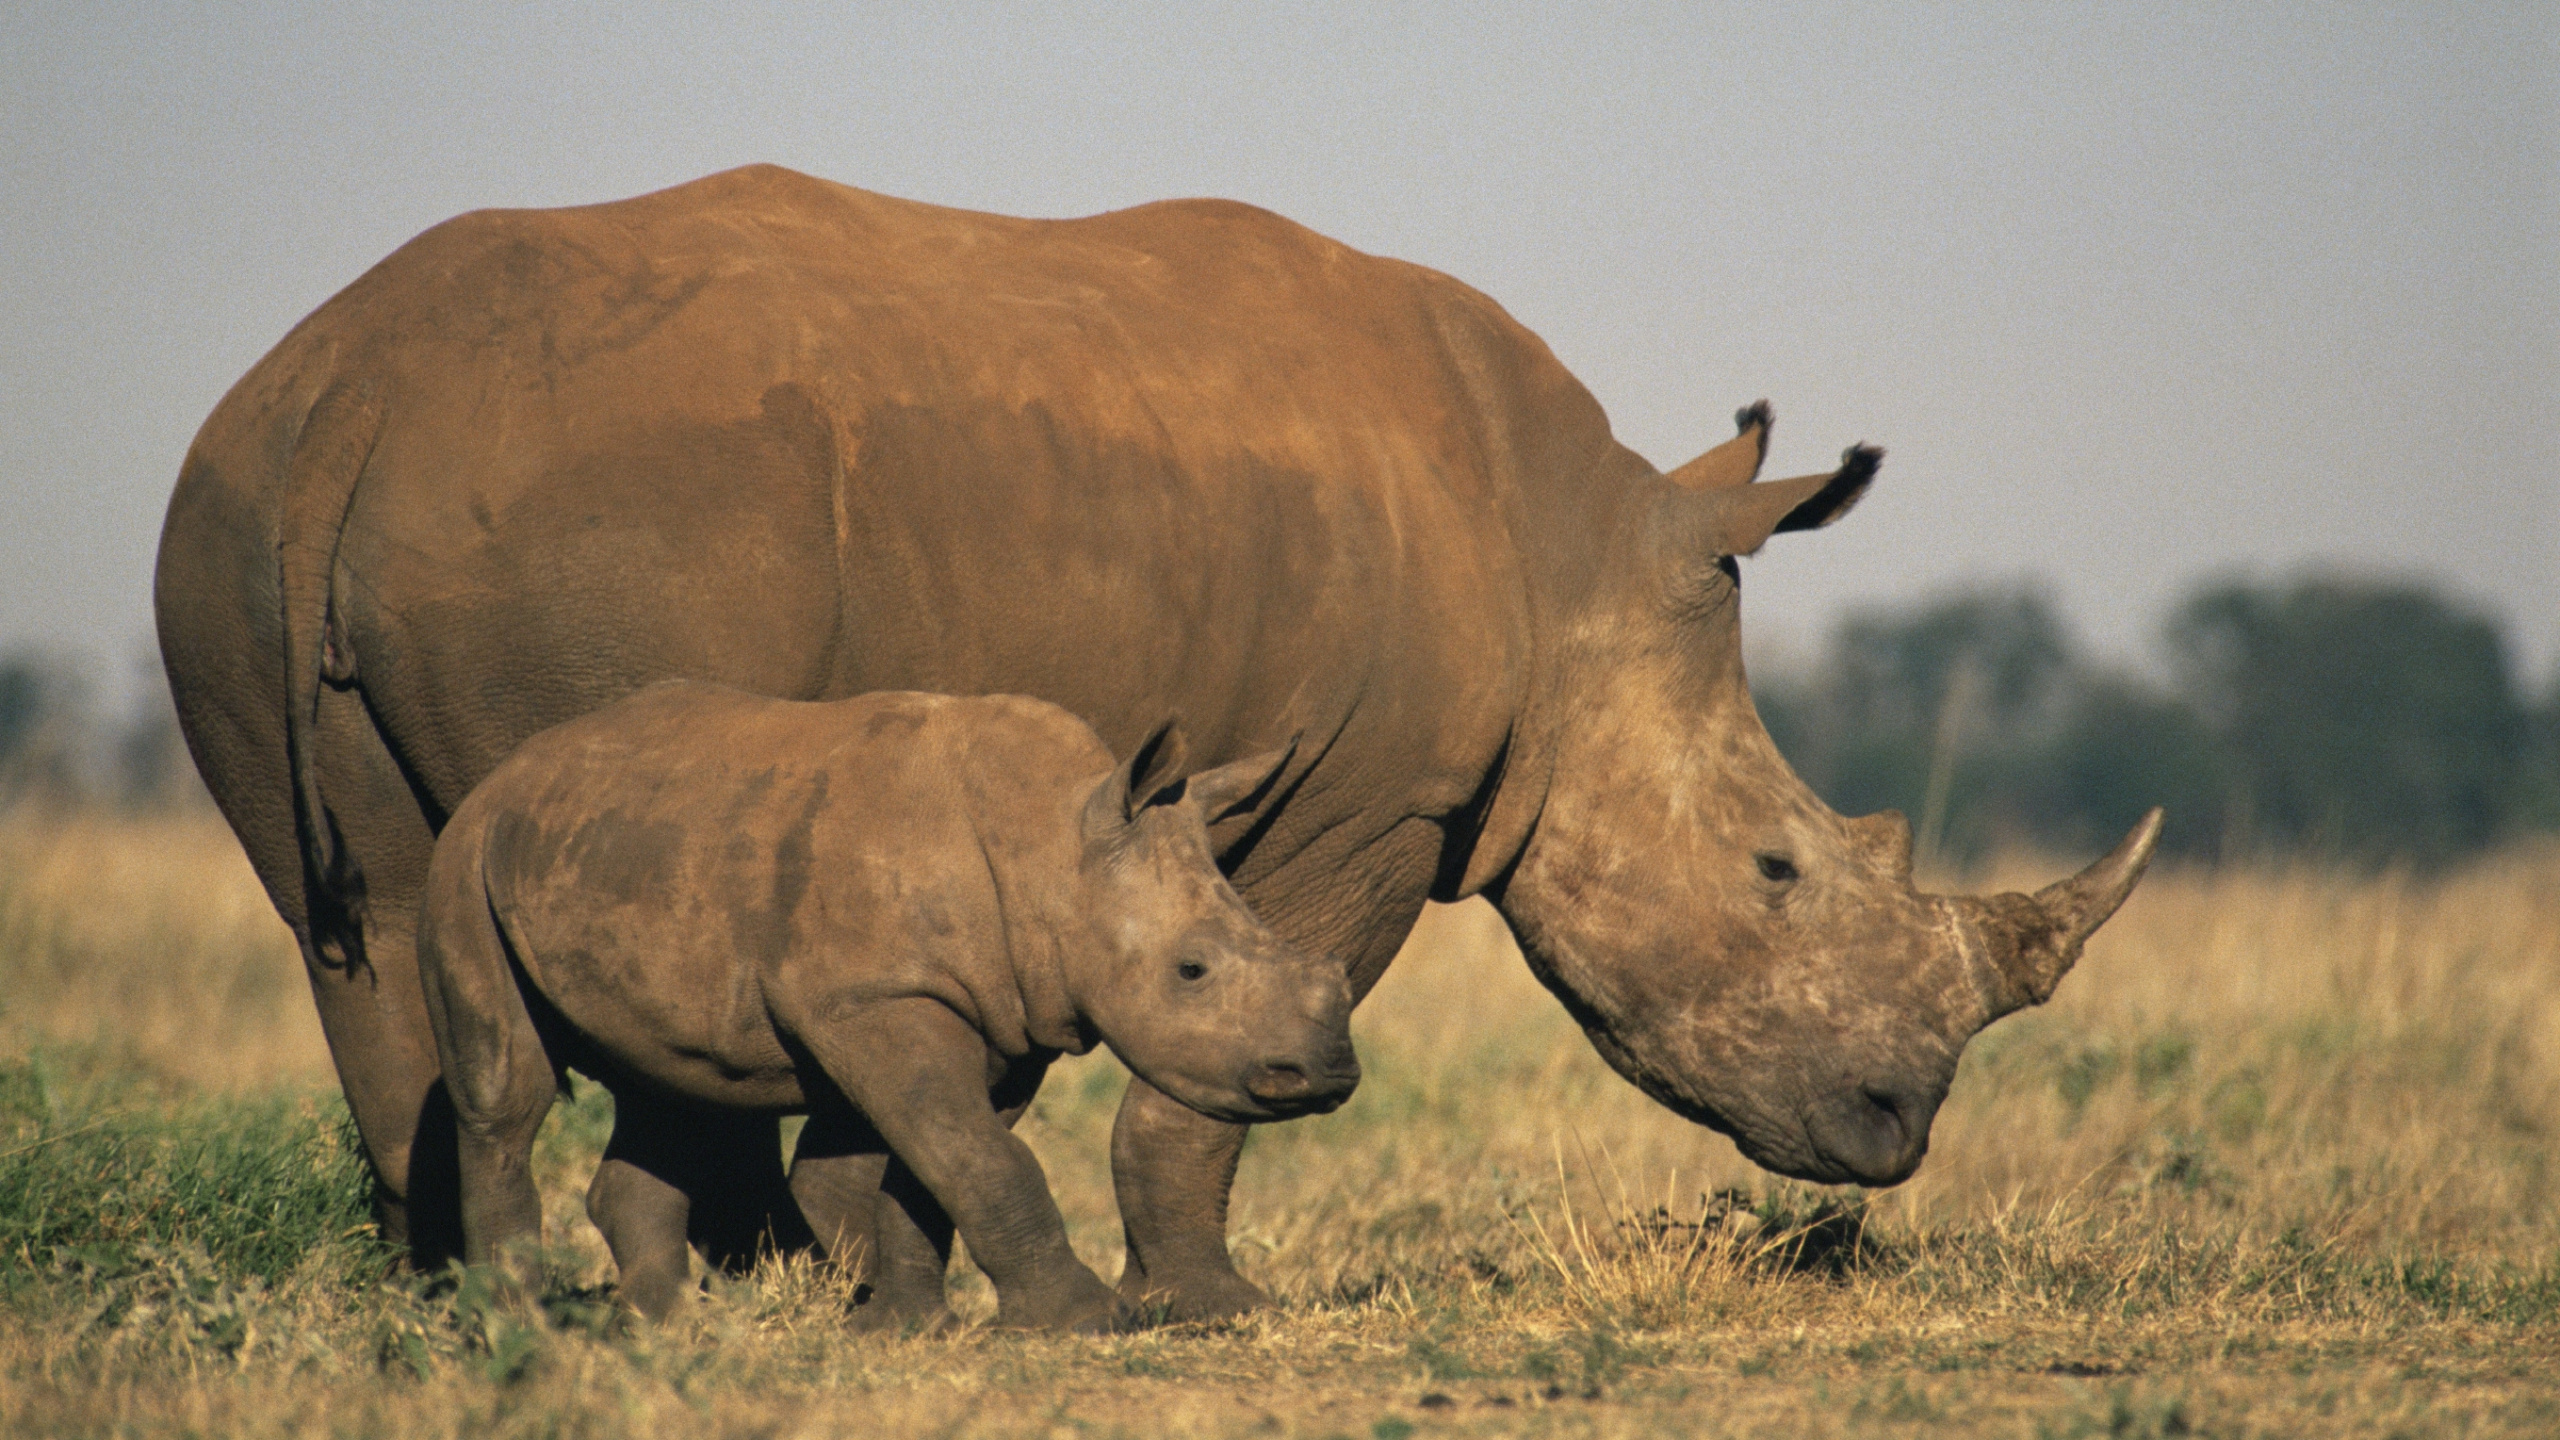 犀牛, 濒临灭绝的物种, 野生动物, 陆地动物, 喇叭 壁纸 2560x1440 允许